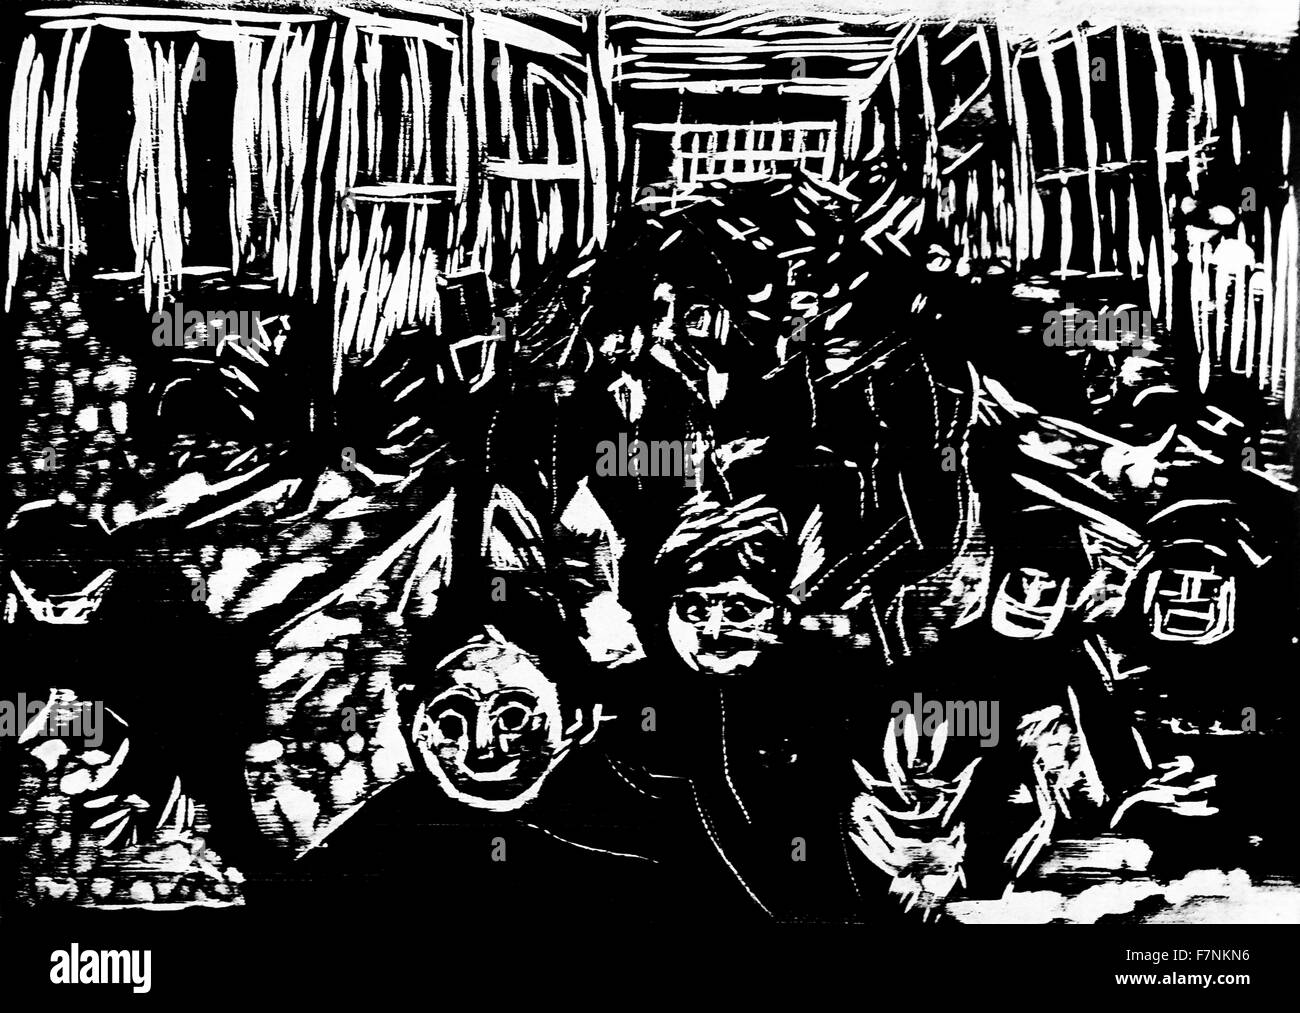 Gravure sur bois dépeignant des personnes marchant dans une rue d'Edvard Munch (1863-1944) peintre et graveur norvégien le plus connu pour sa peinture intitulée "Le Cri". Il a été grandement influencé par l'expressionnisme allemand. Datée 1905 Banque D'Images